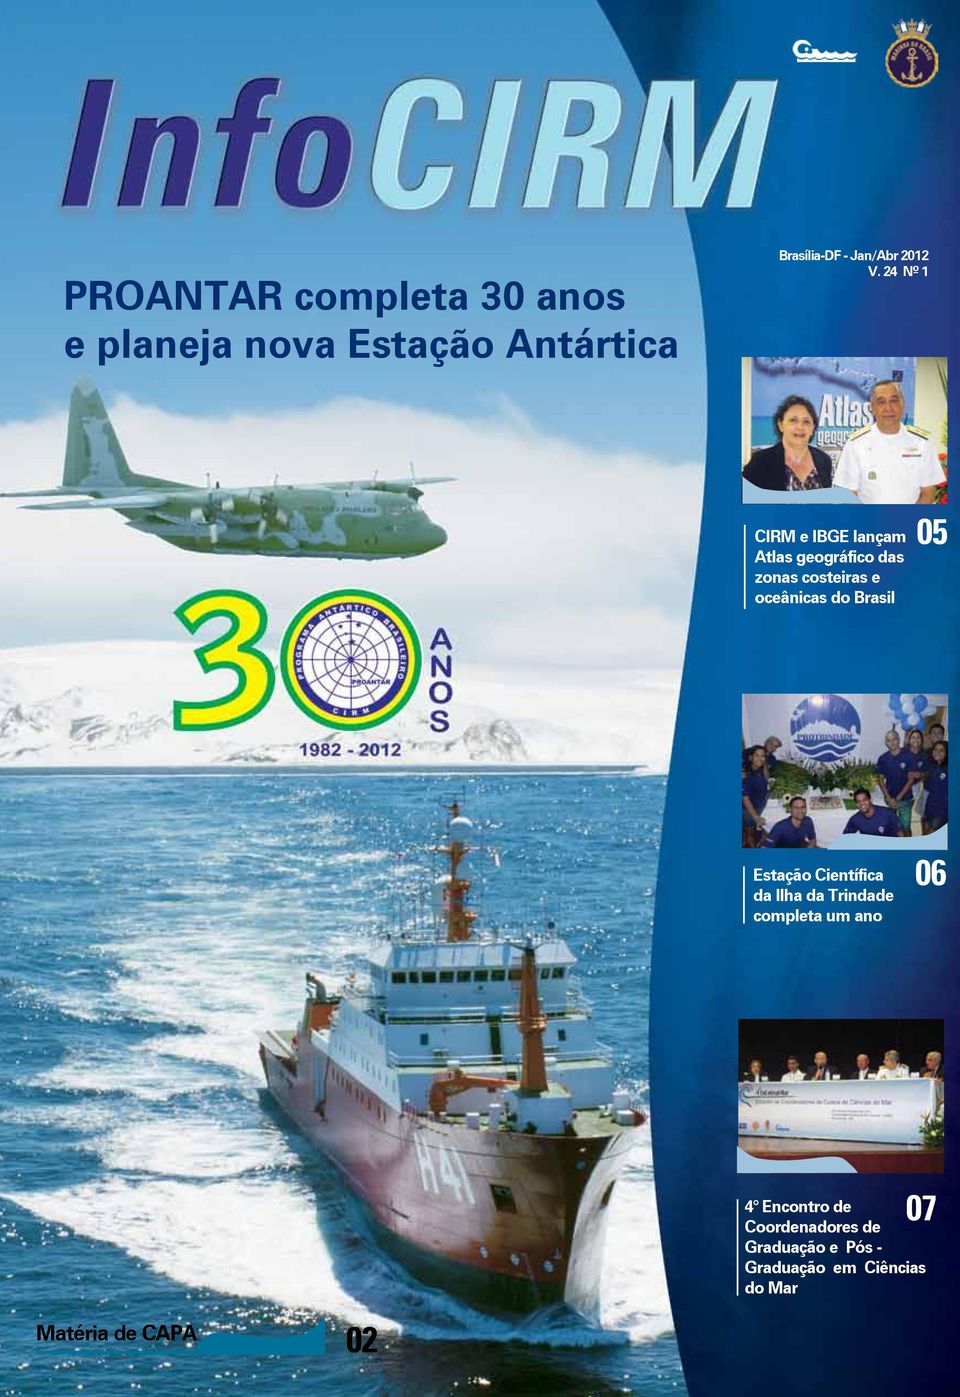 24 Nº 1 CIRM e IBGE lançam Atlas geográfico das zonas costeiras e oceânicas do